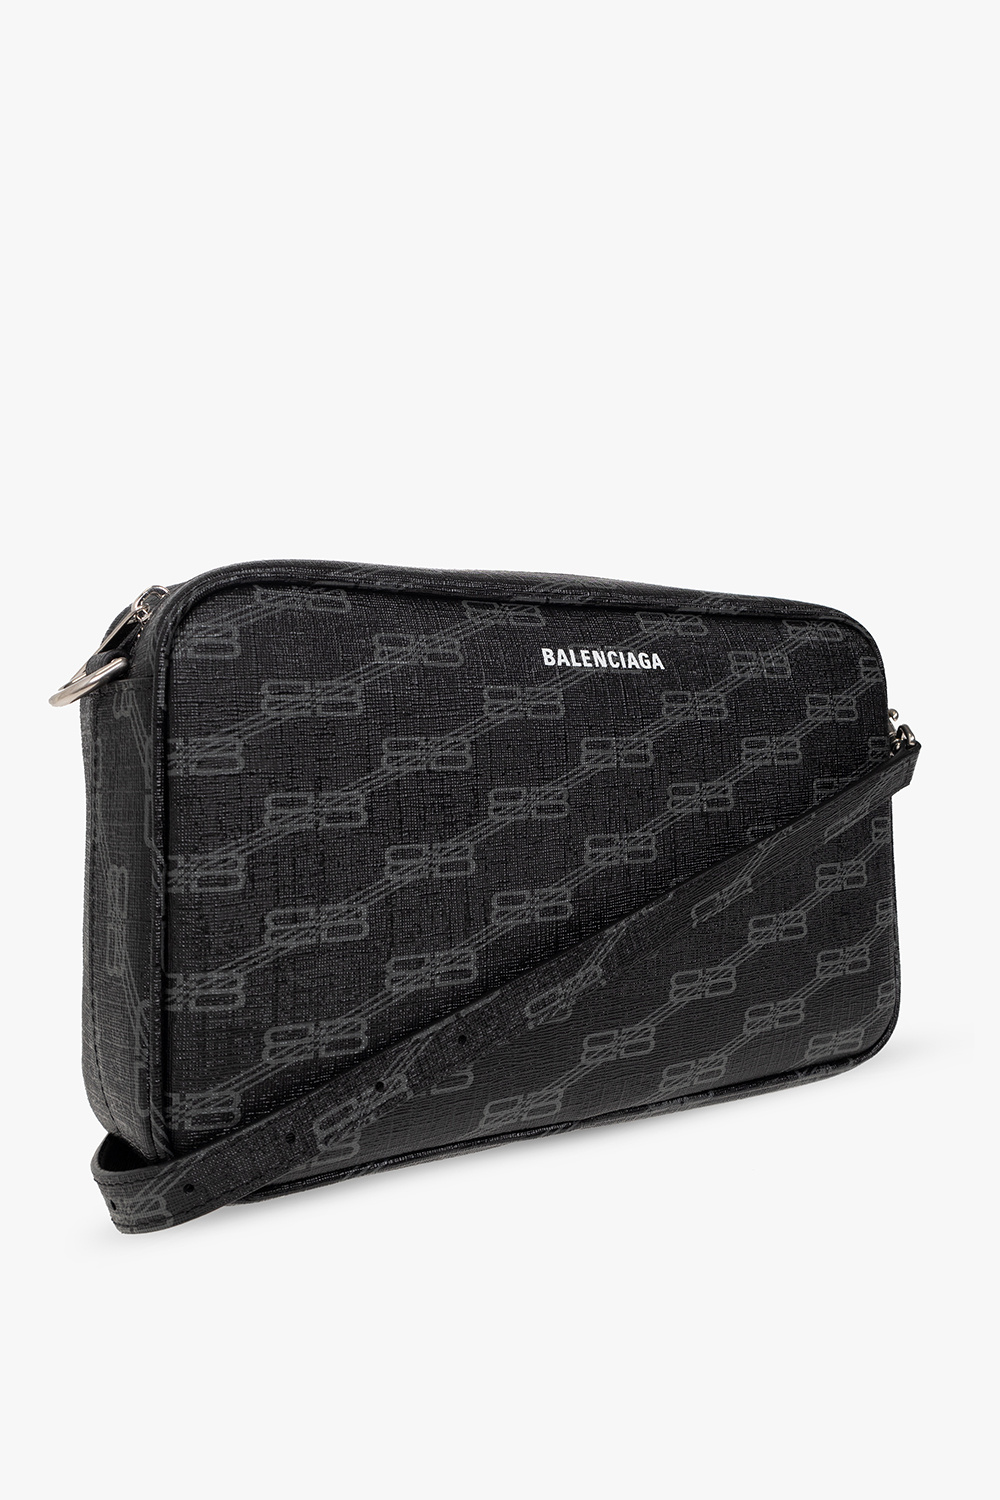 Balenciaga ‘Signature Medium’ shoulder bag